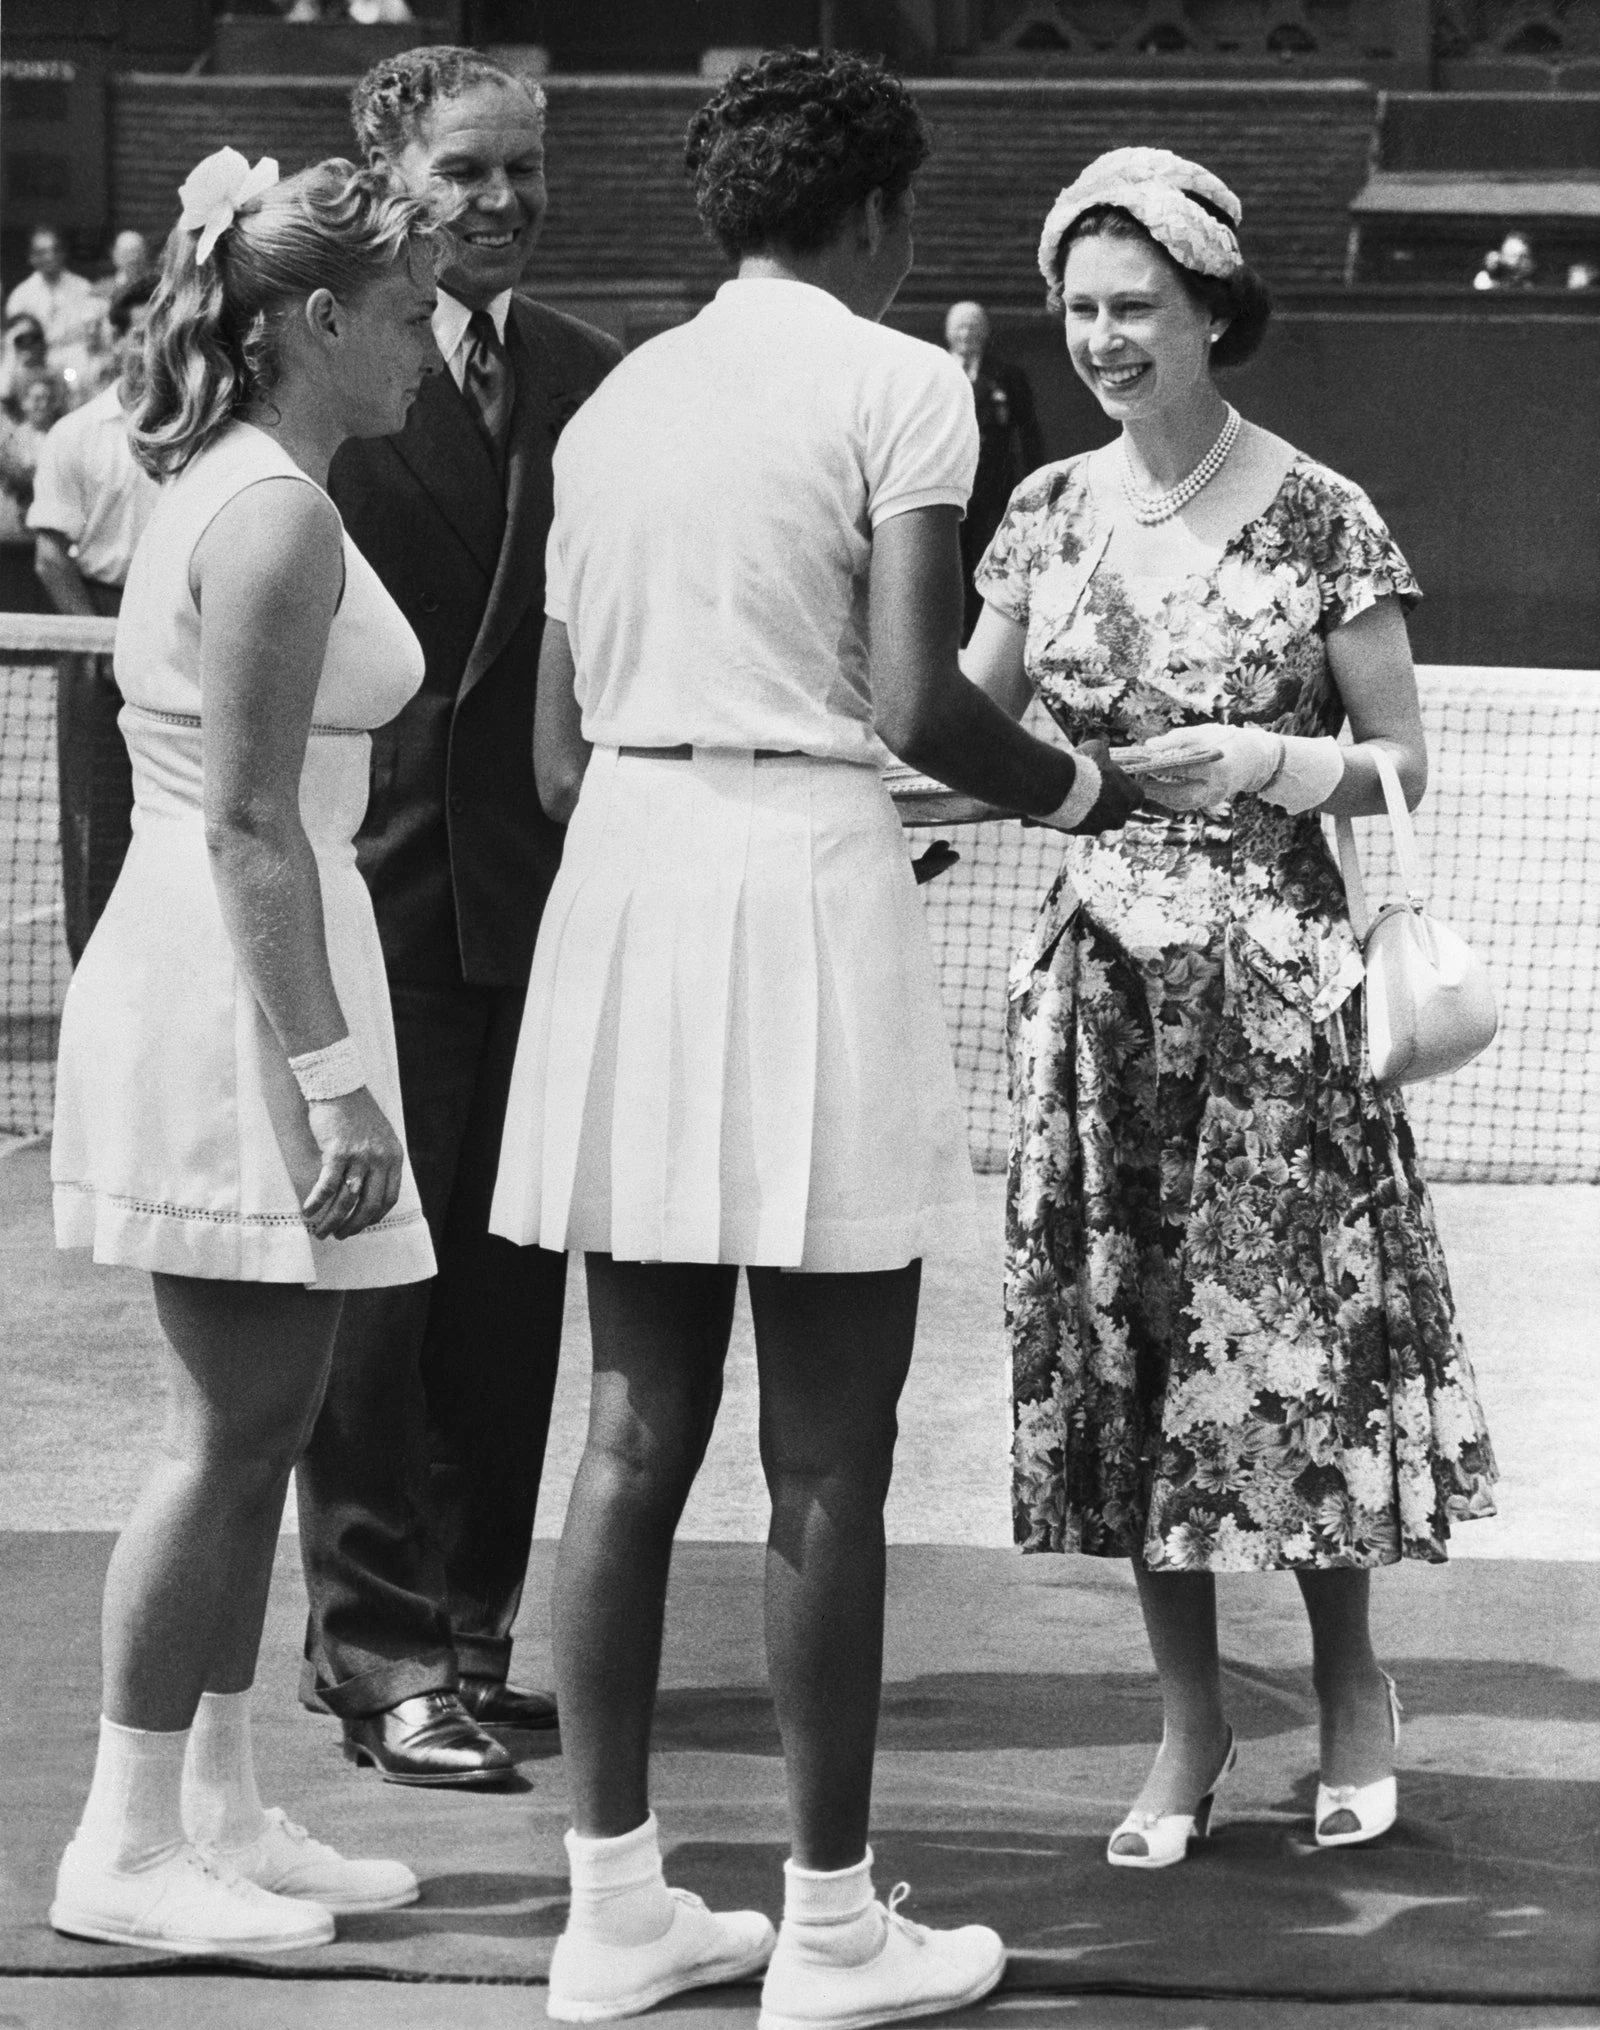 У 1957 році Єлизавета II мала чудовий вигляд у квітковій сукні, вручаючи трофей переможниці Алтеї Гібсон.